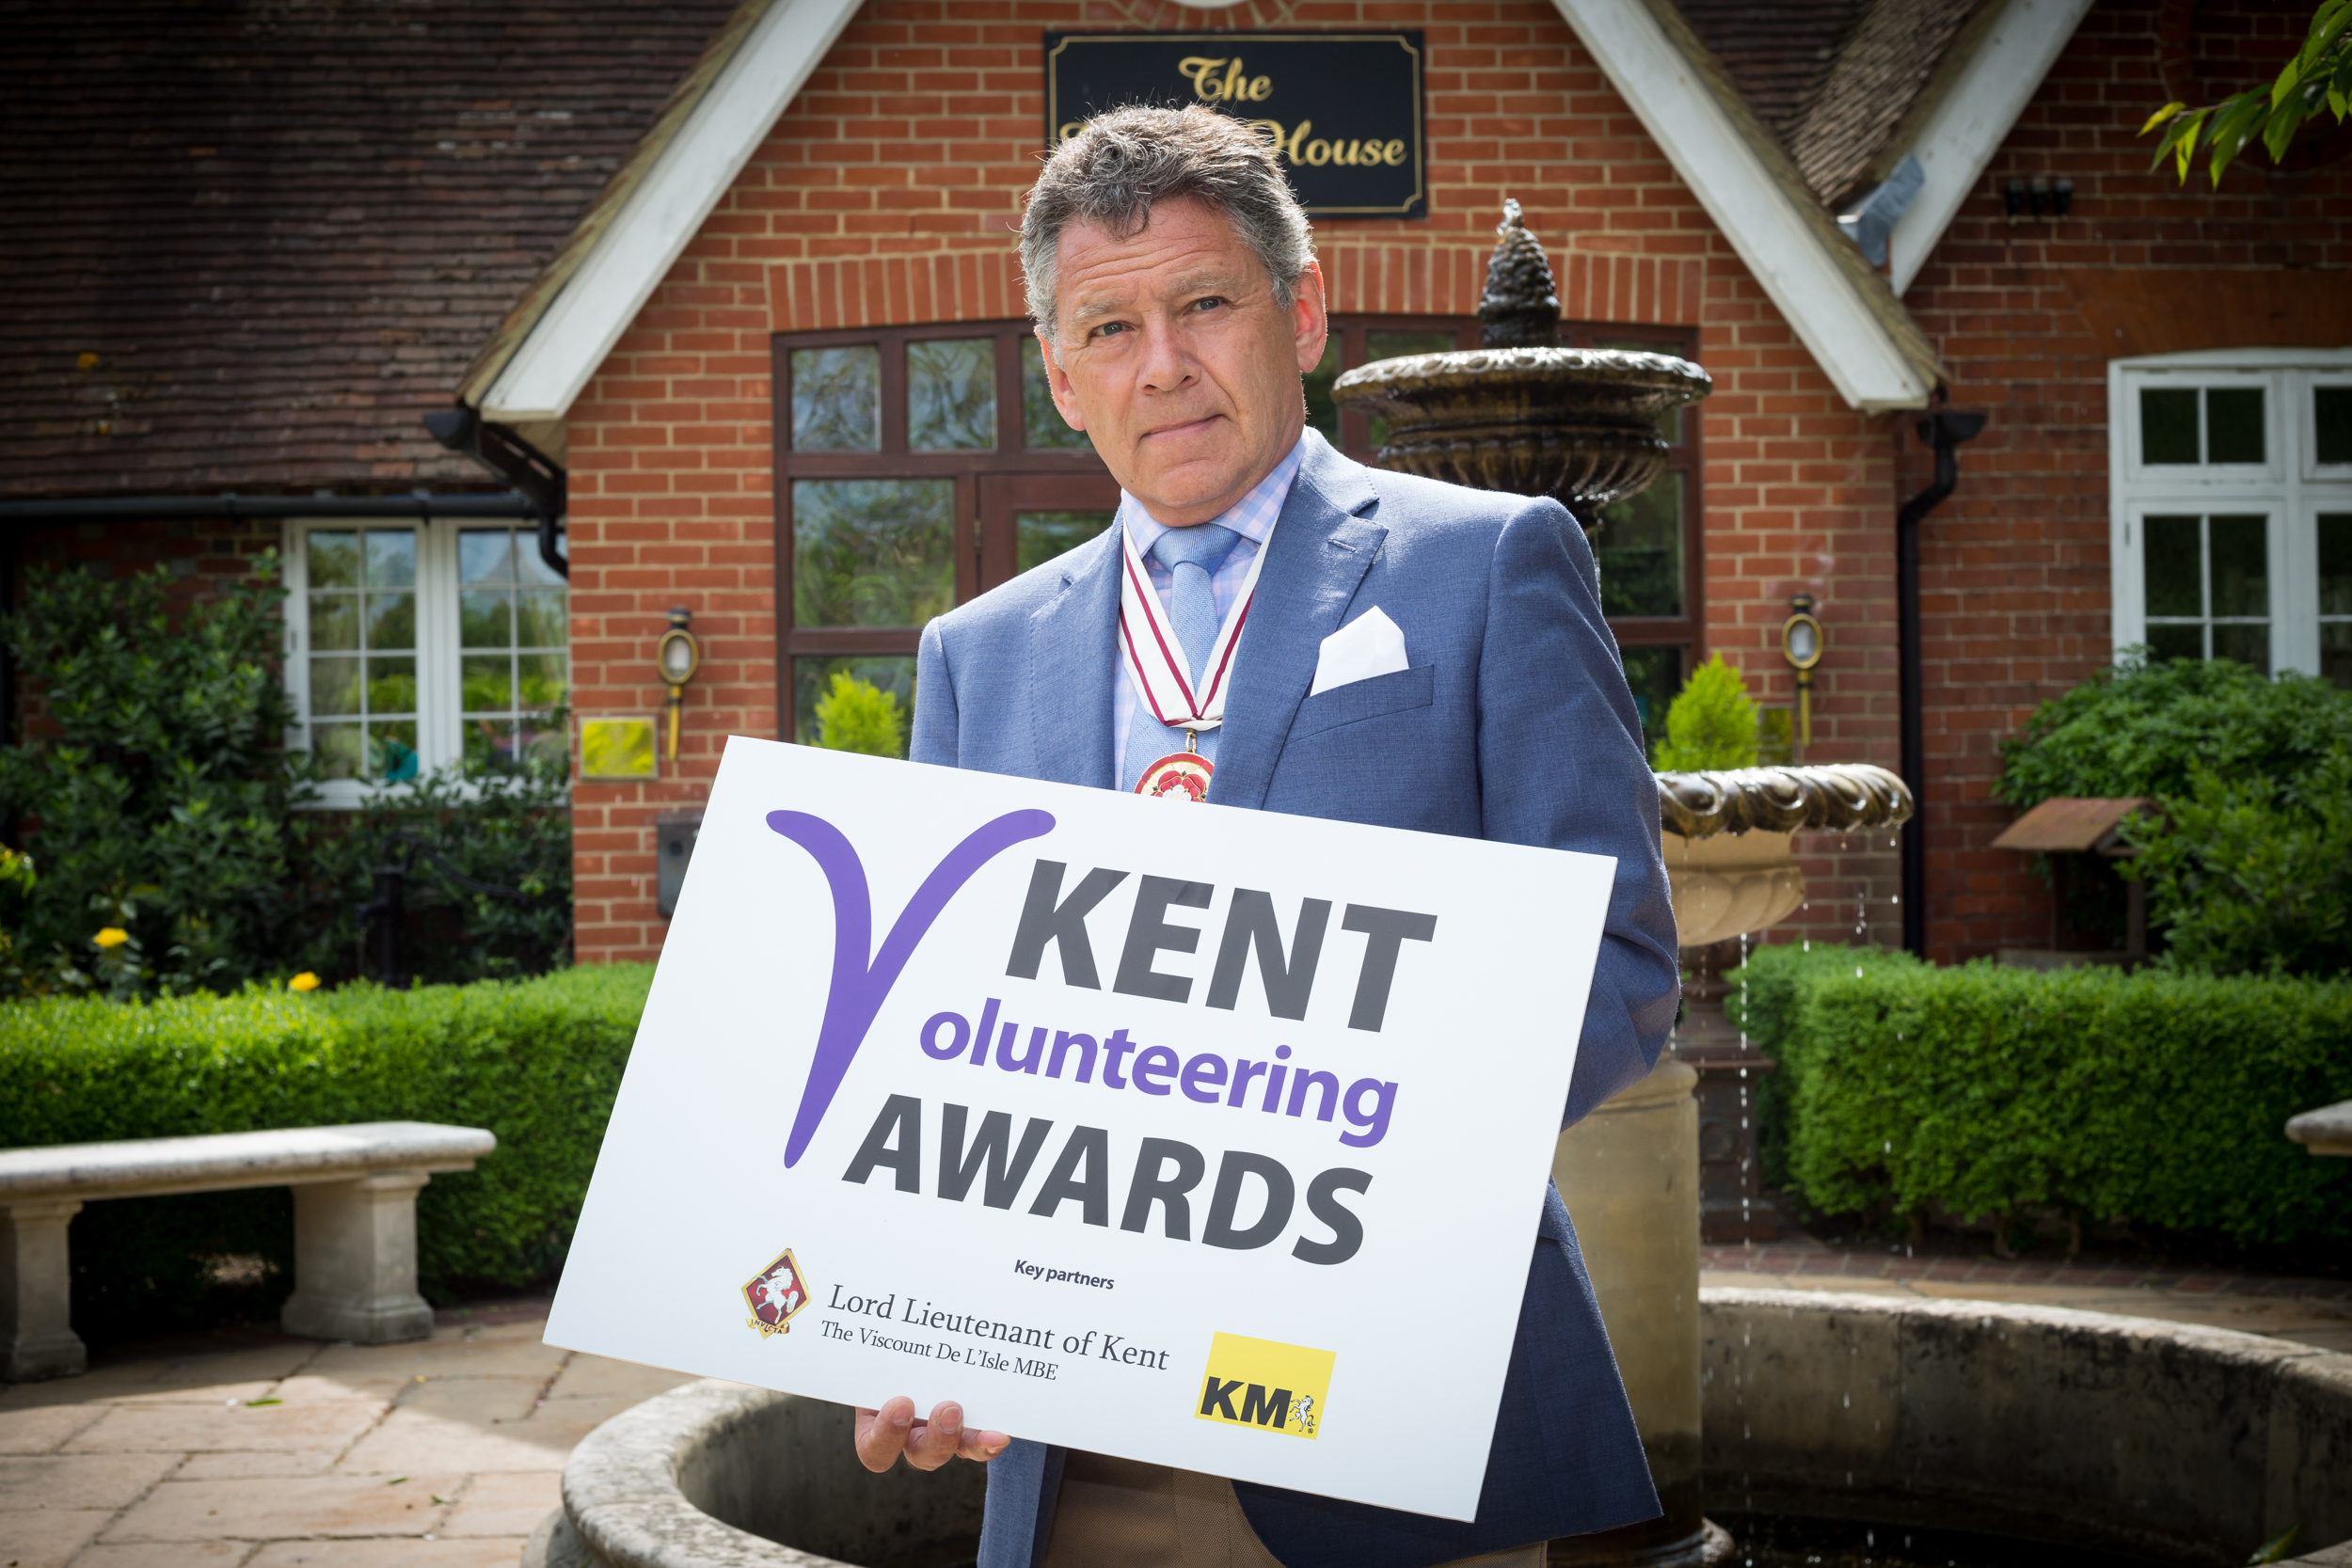 Kent Volunteering Awards launch